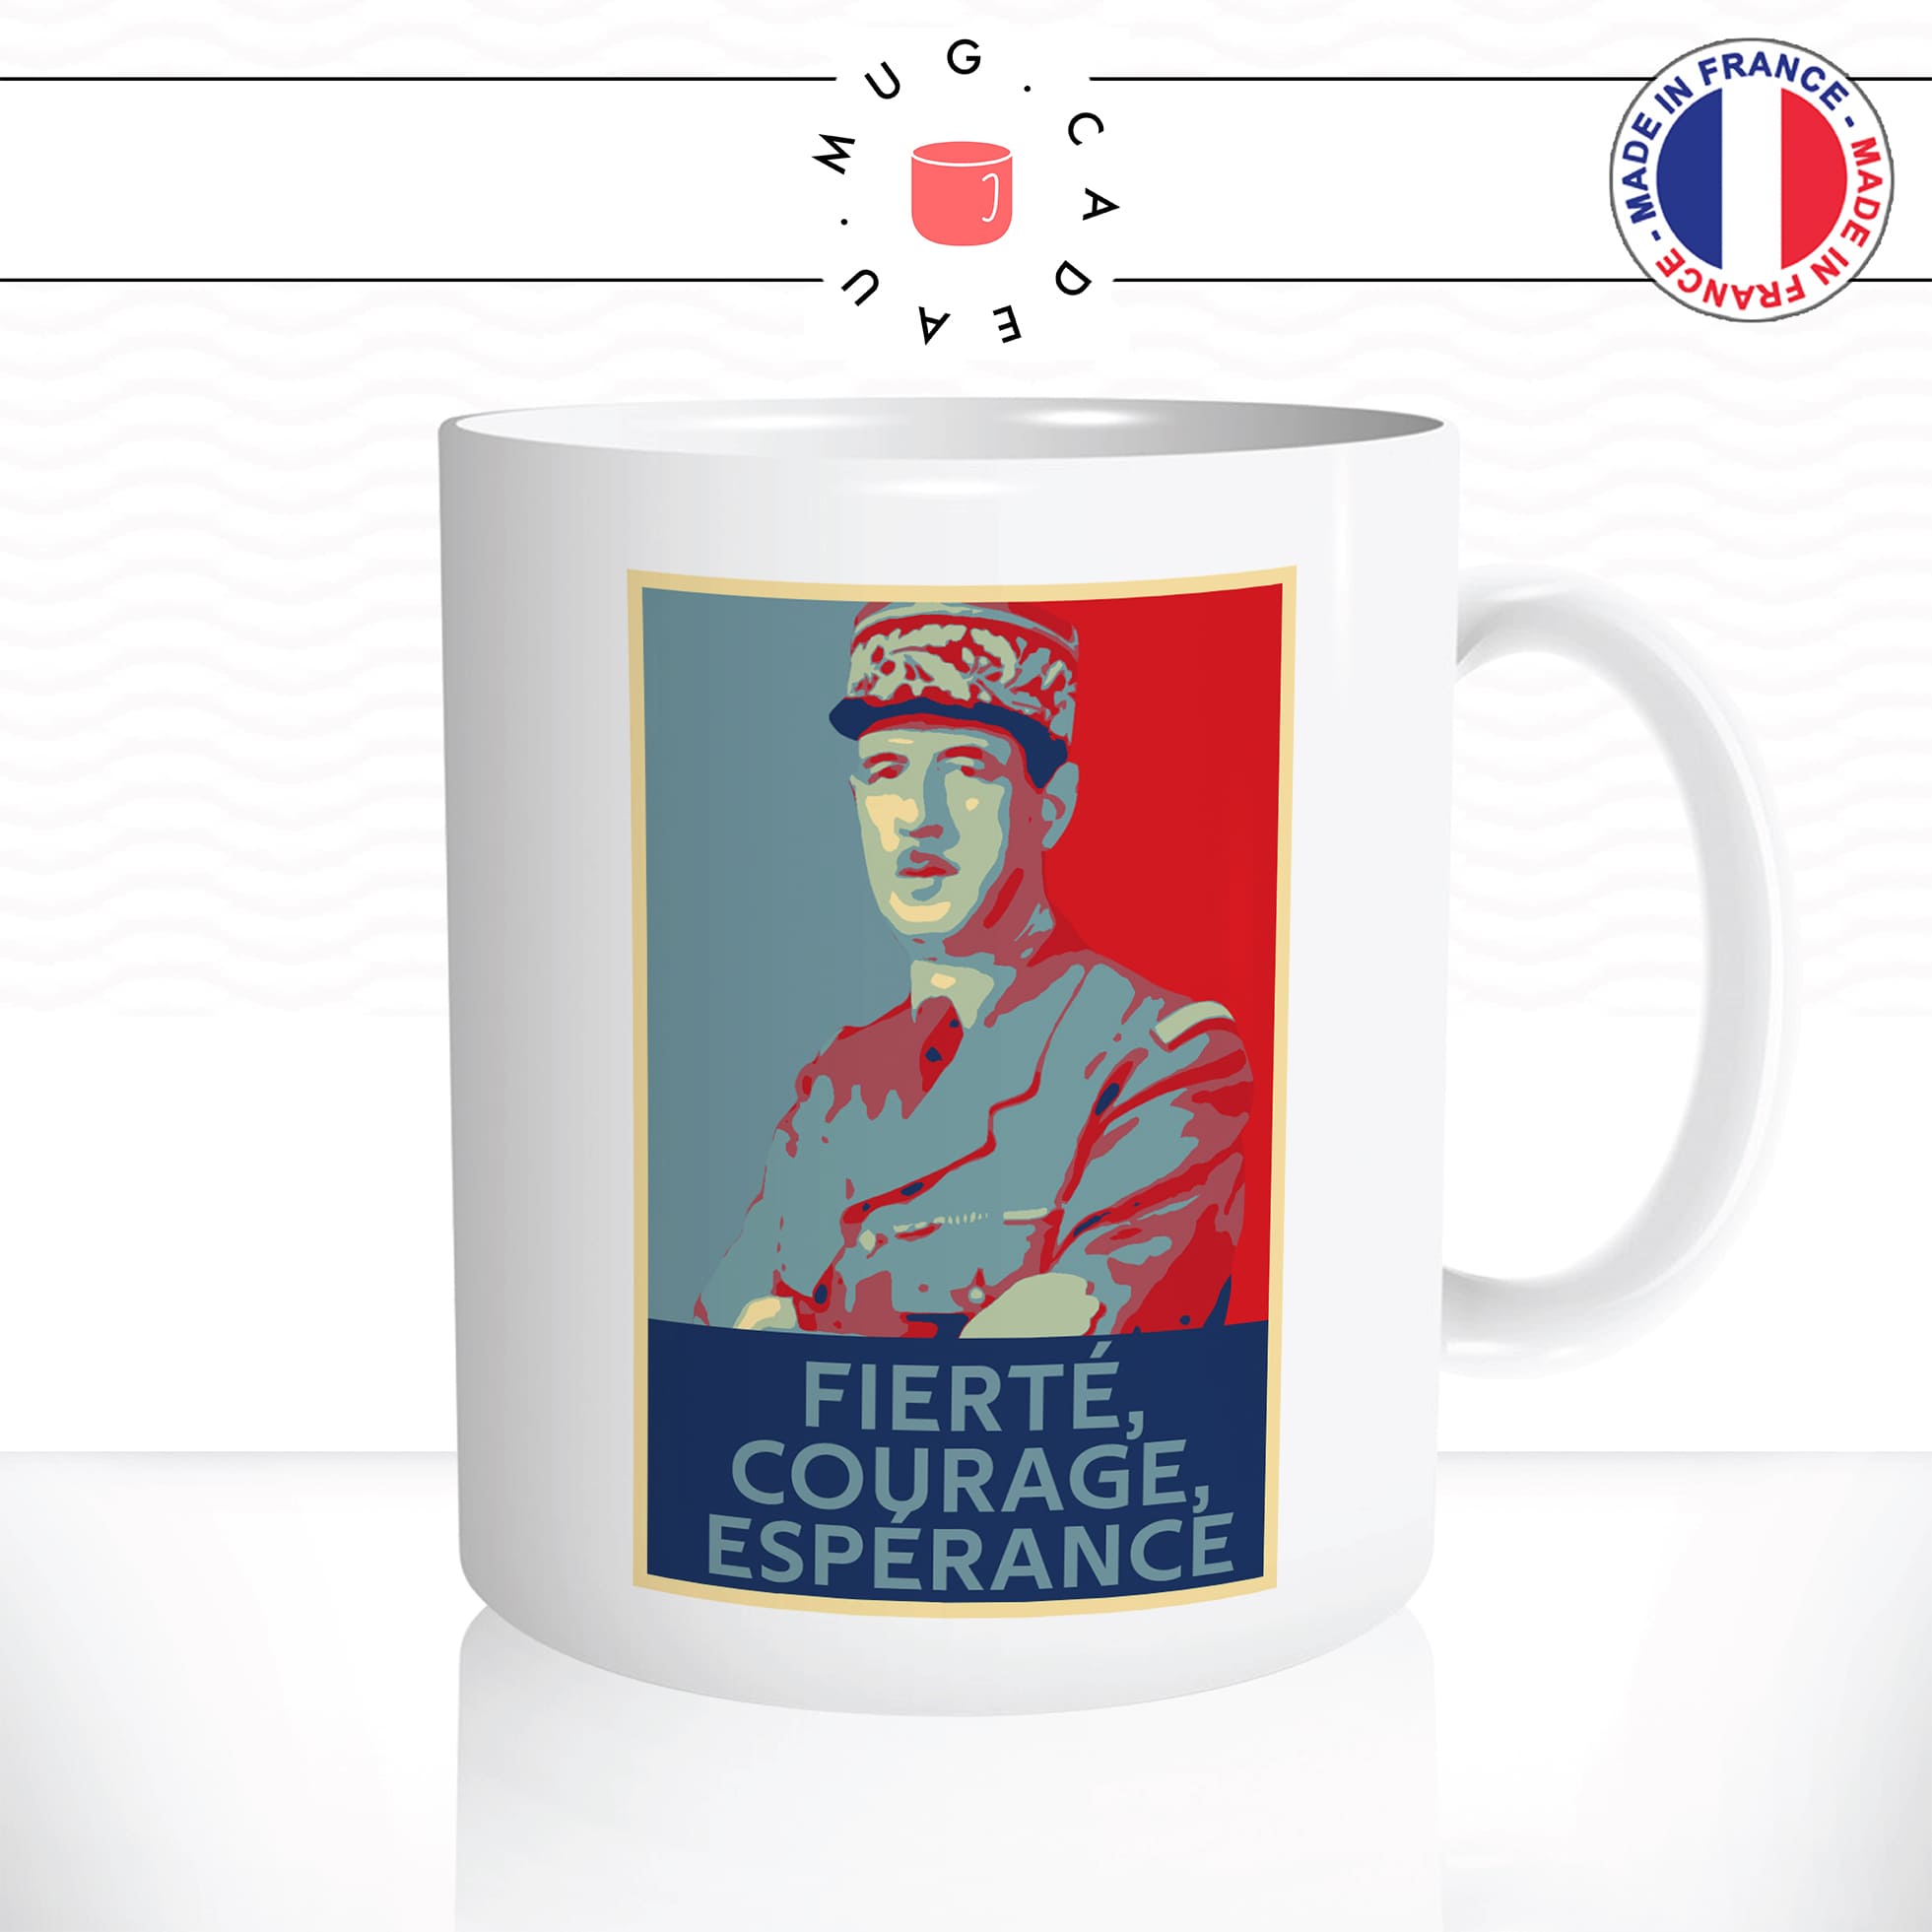 mug-tasse-blanc-simple-général-de-gaulle-charles-fierte-courage-esperance-président-francais-culte-affiche-obama-idée-cadeau-original2